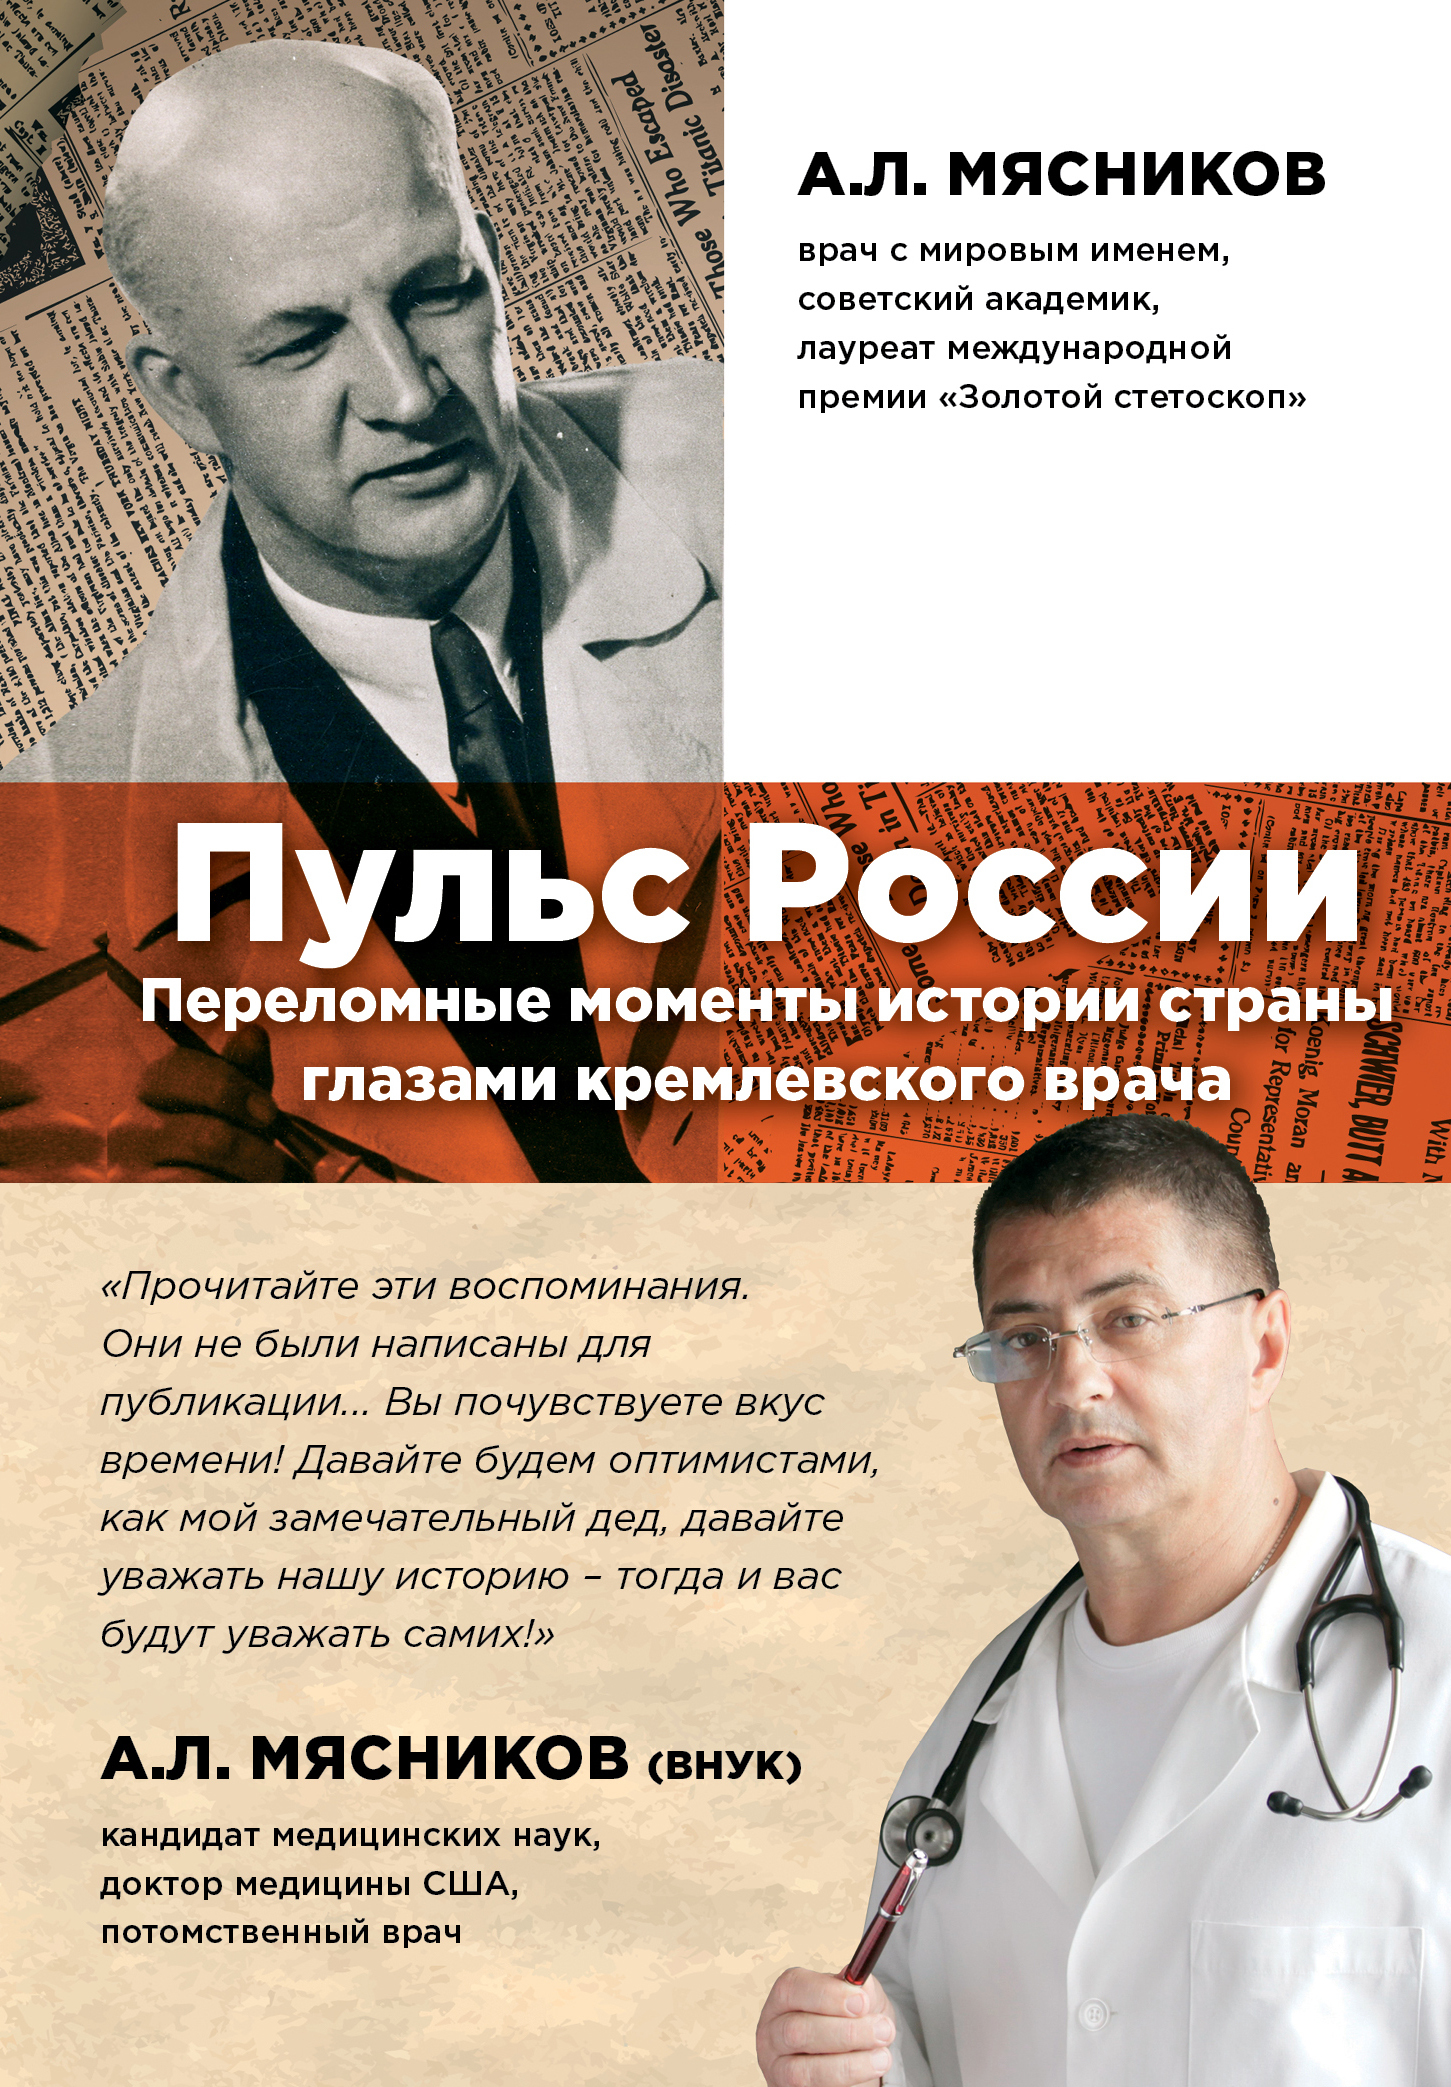 Кремлевский врач. А Л Мясников. Книги про врачей.